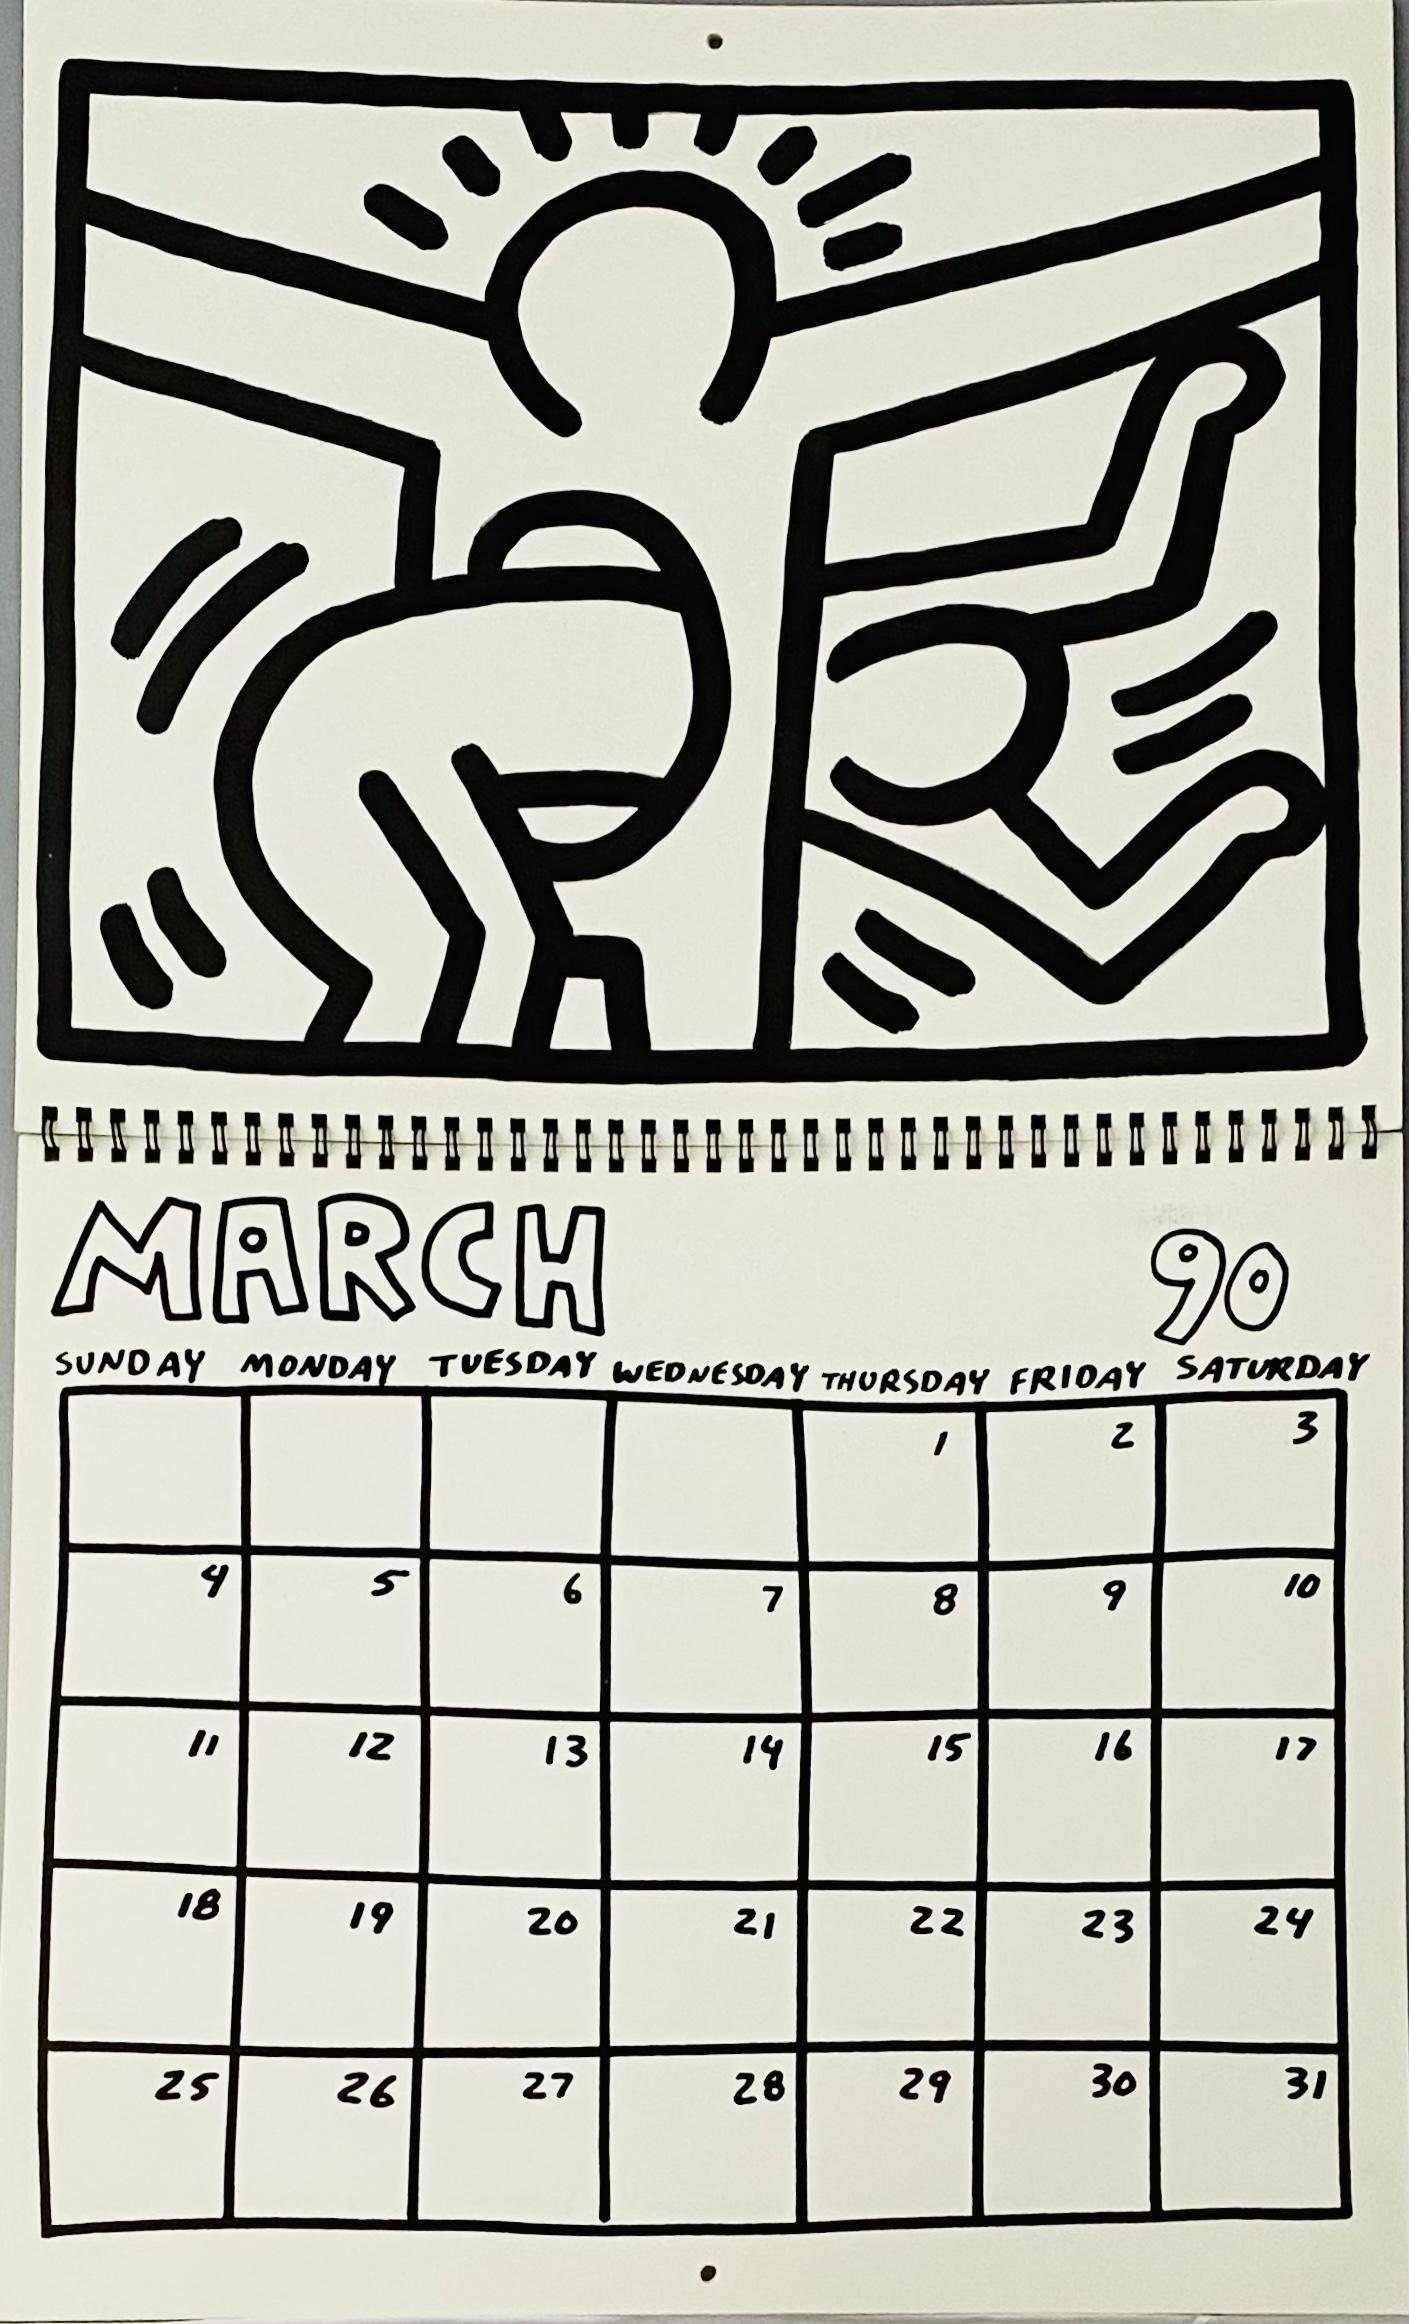 Keith Haring Pop Shop calendar 1989/1990 (vintage Keith Haring)  1